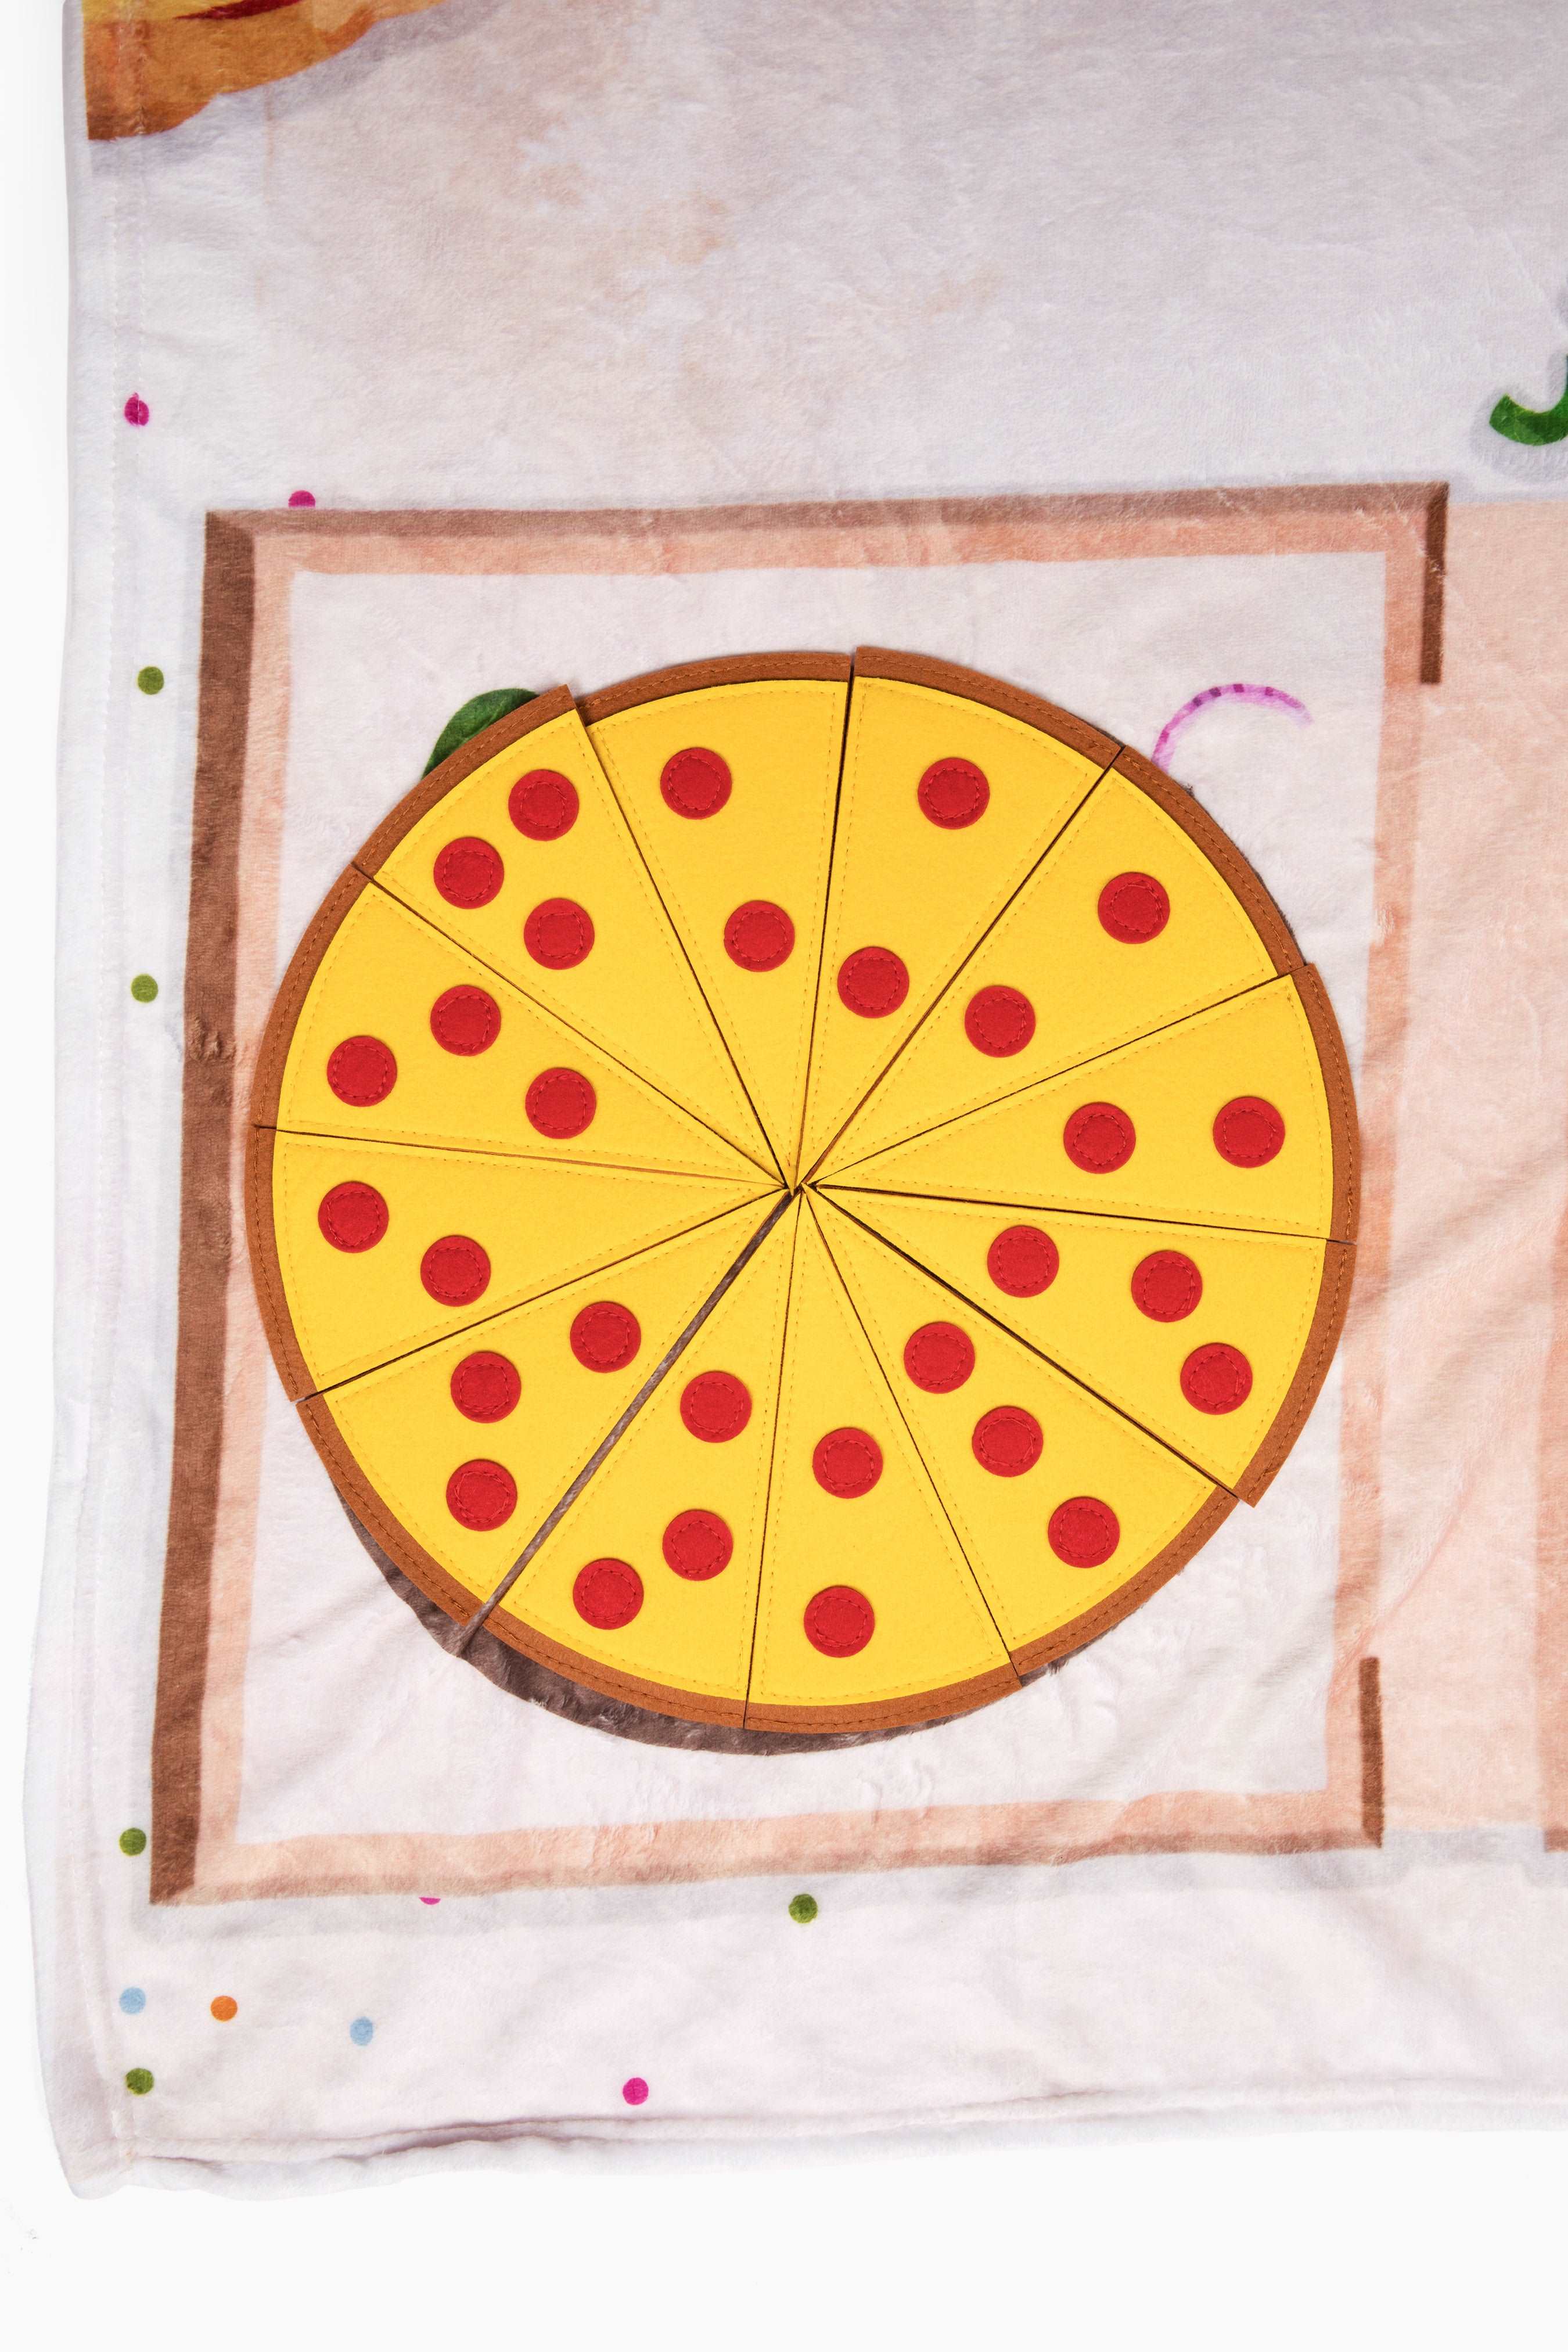 monthly milestone baby blanket - pizza theme